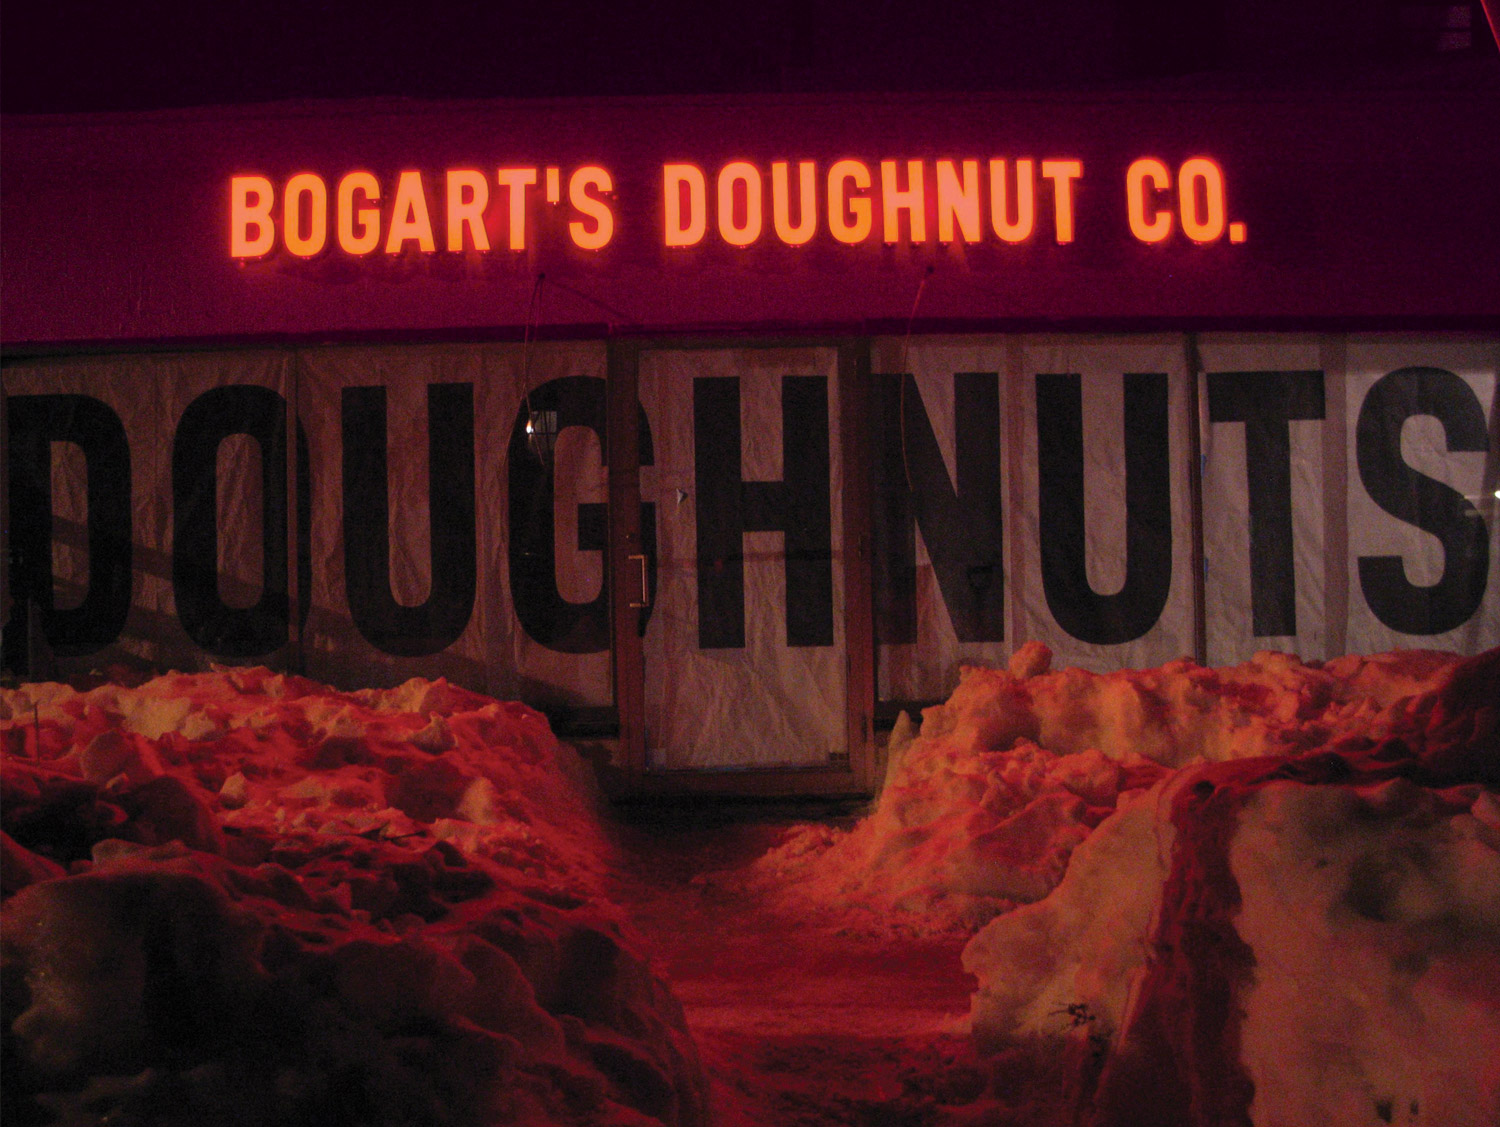 Bogarts-Doughnut-Co-Sign-07.jpg